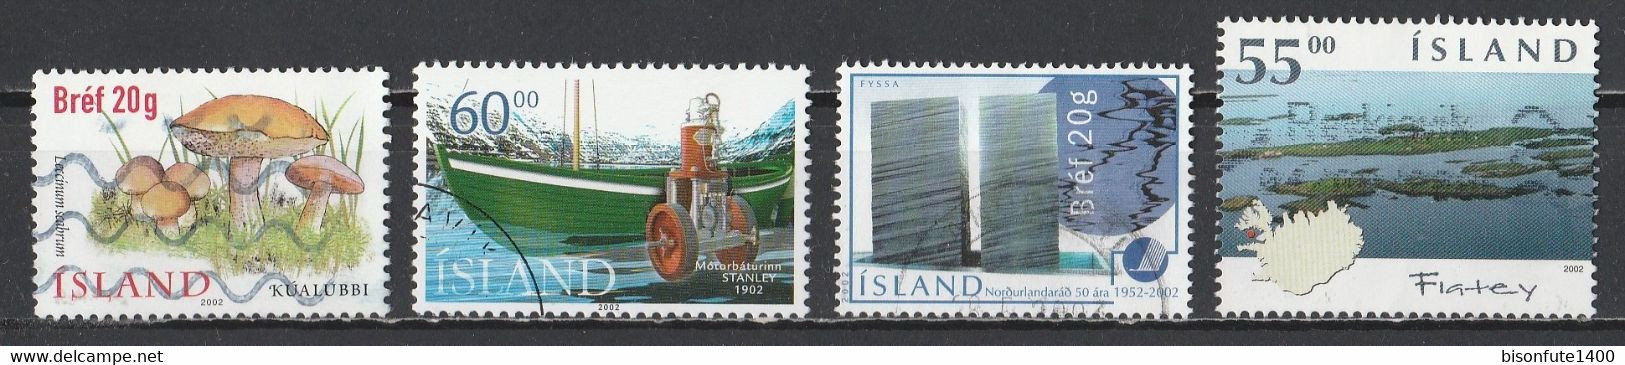 Islande 2002 : Timbres Yvert & Tellier N° 928 - 930 - 935 Et 948 Oblitérés. - Oblitérés